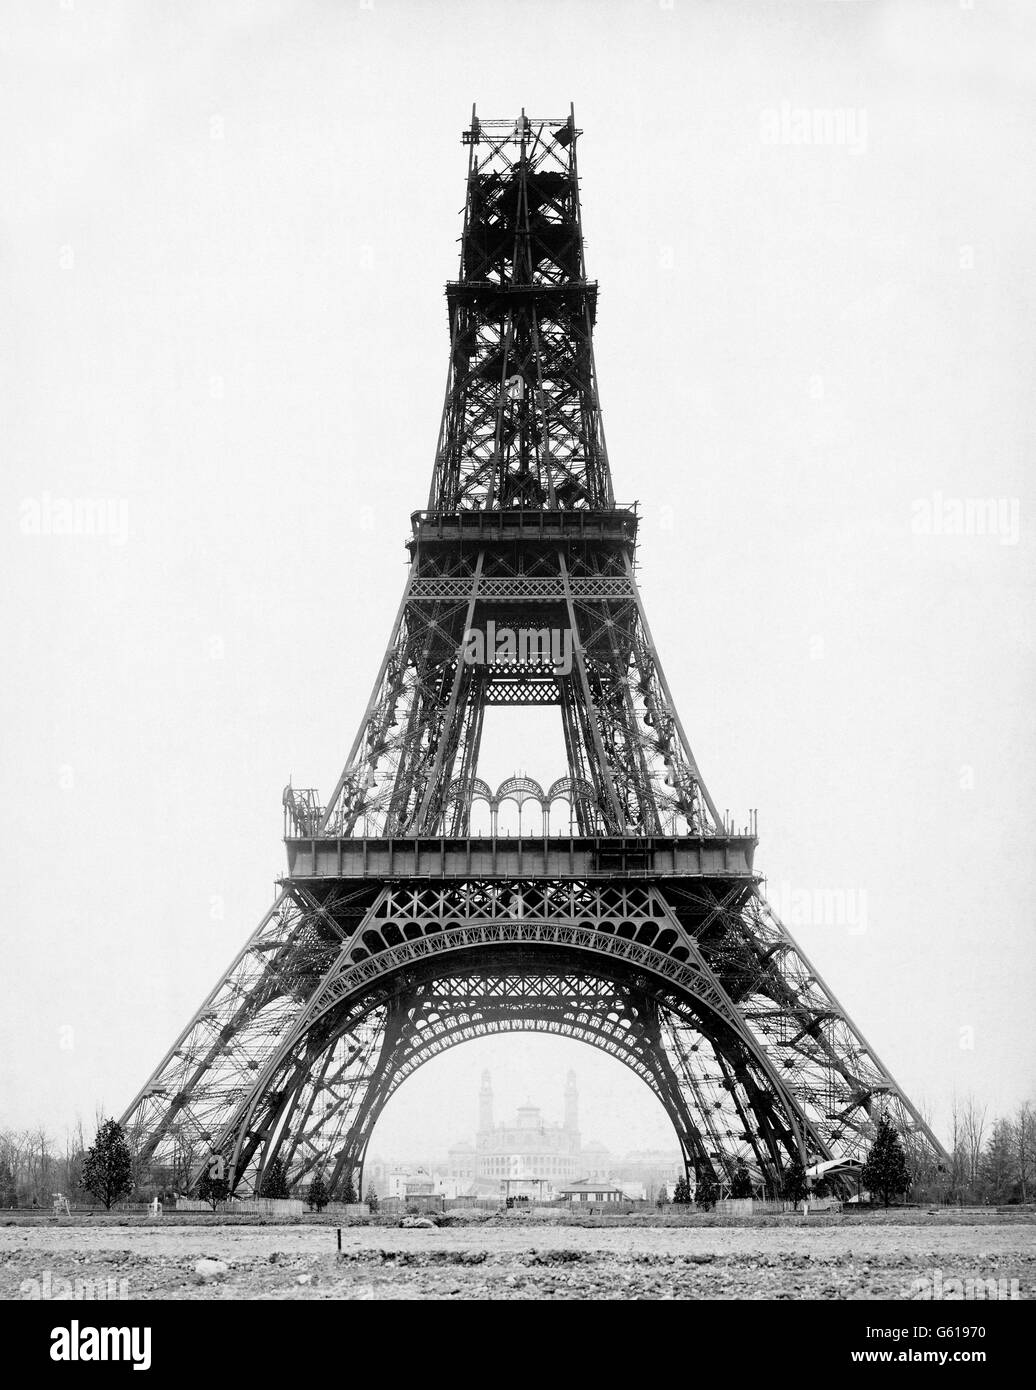 Eiffel-Turm im Bau, gebaut, um als Eingang zur Weltausstellung Paris 1889 dienen. Dieses Foto wurde von Louis-Emile Durandelle, im November 1888, ca. 4 Monate vor Fertigstellung aufgenommen. Stockfoto